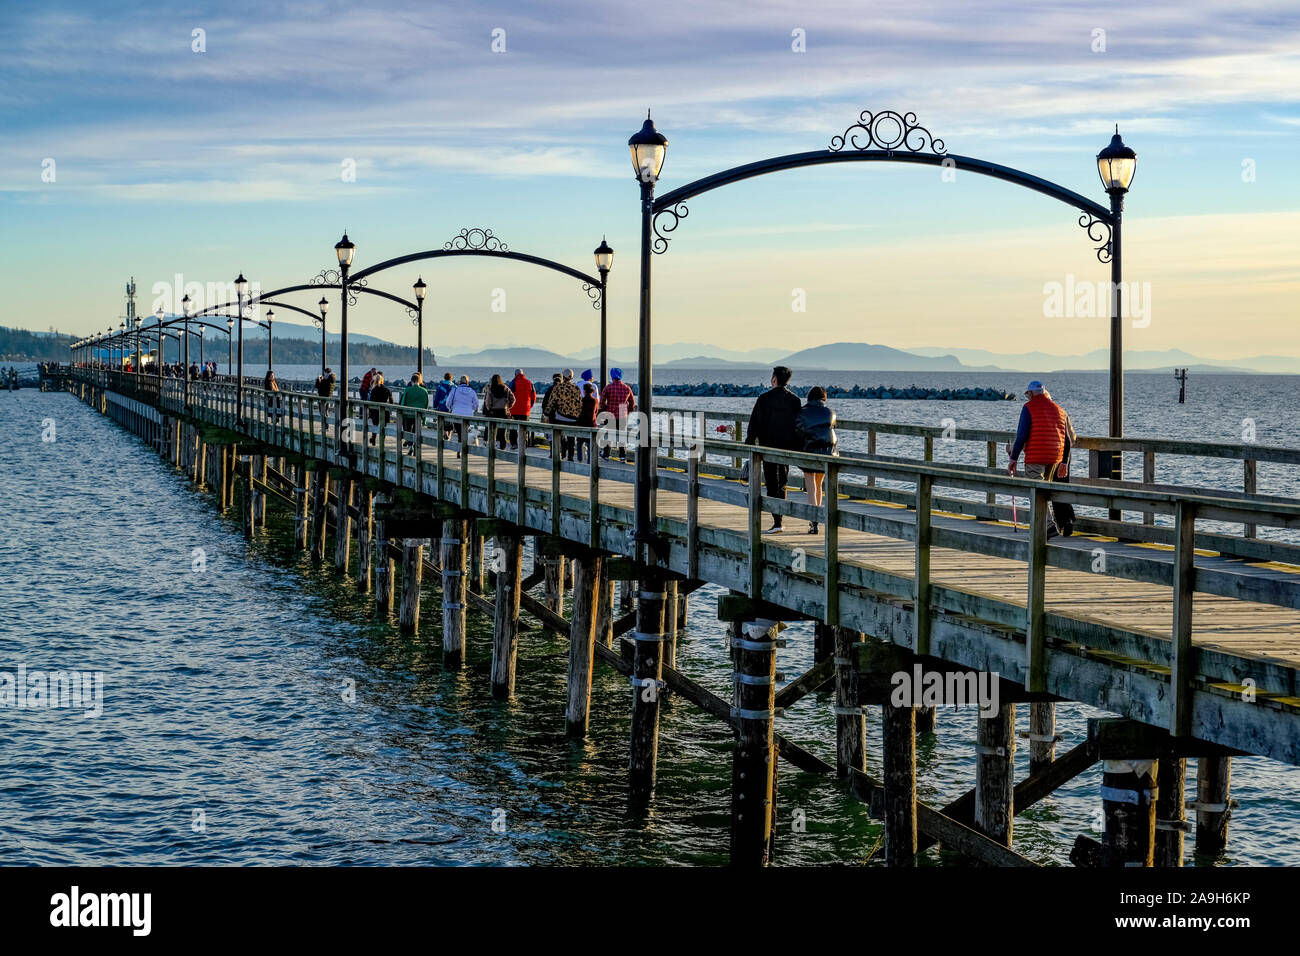 La gente disfruta de un paseo en White Rock Pier, White Rock, British Columbia, Canadá Foto de stock